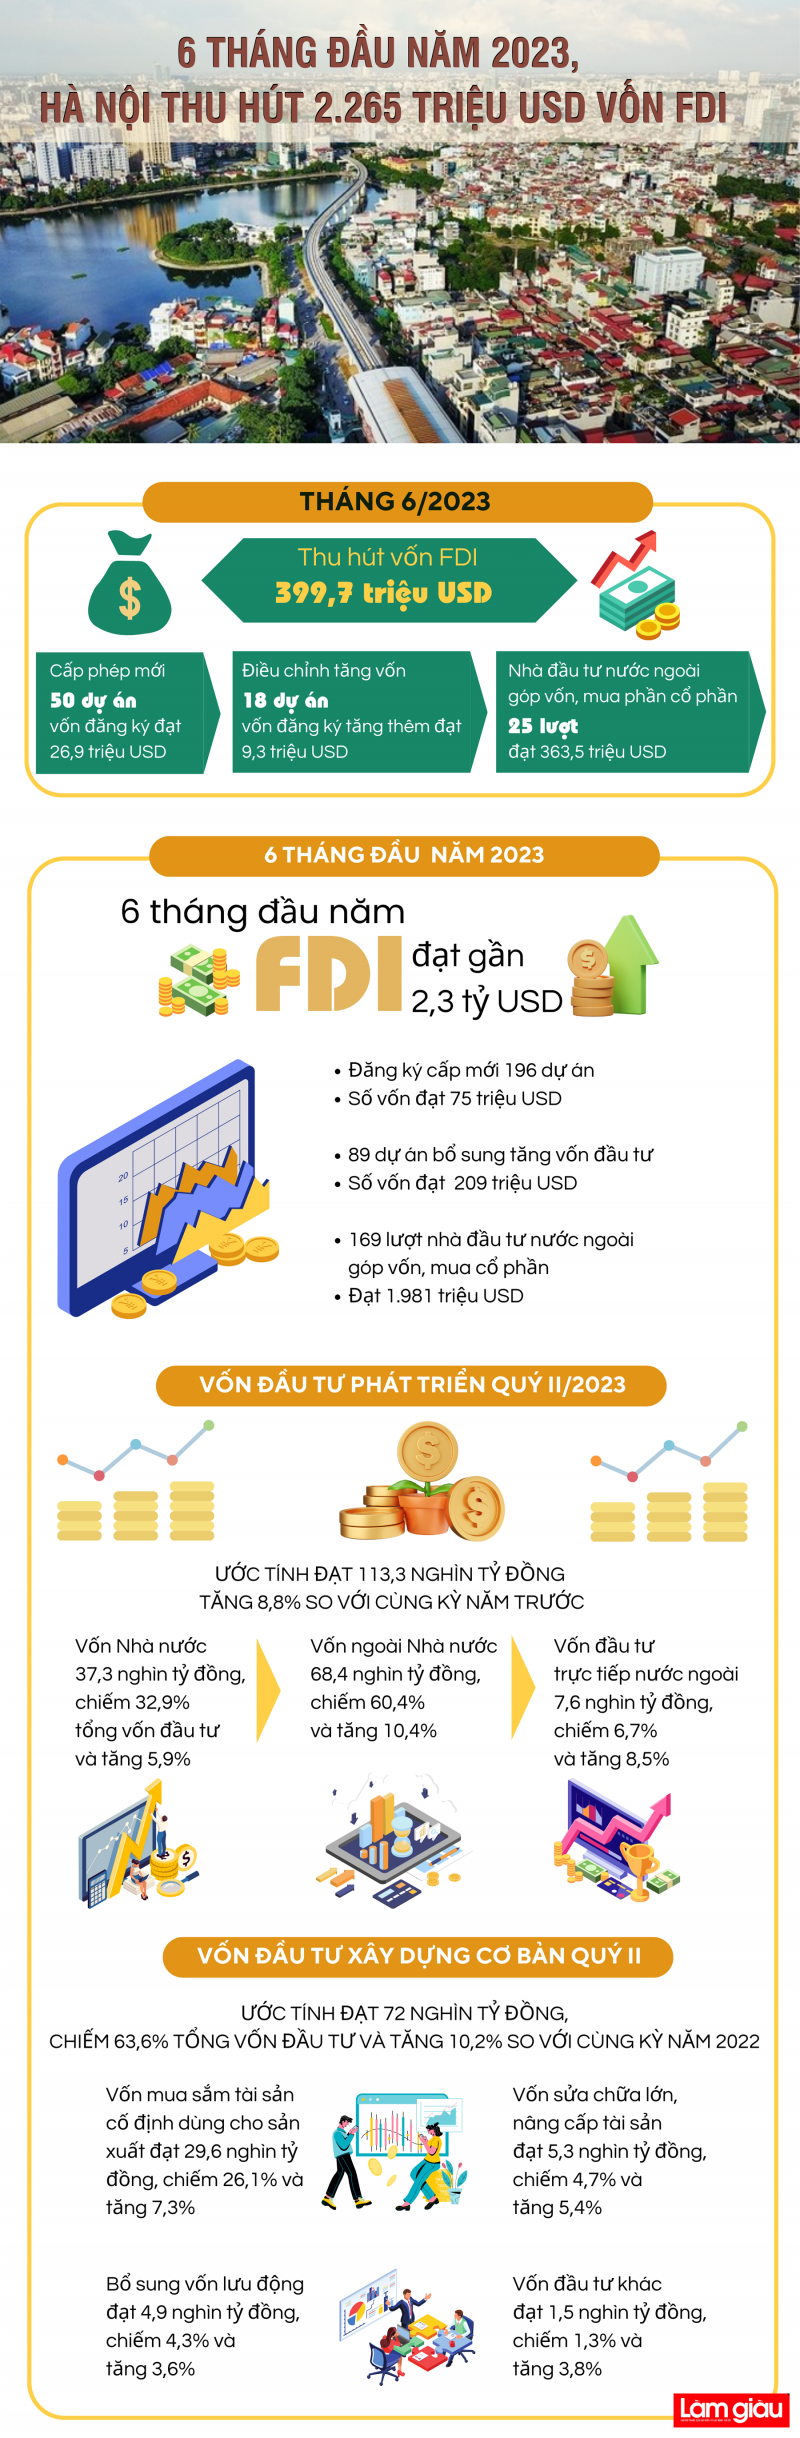 [Infographic]: 6 tháng đầu năm 2023, Hà Nội thu hút 2.265 triệu USD vốn FDI